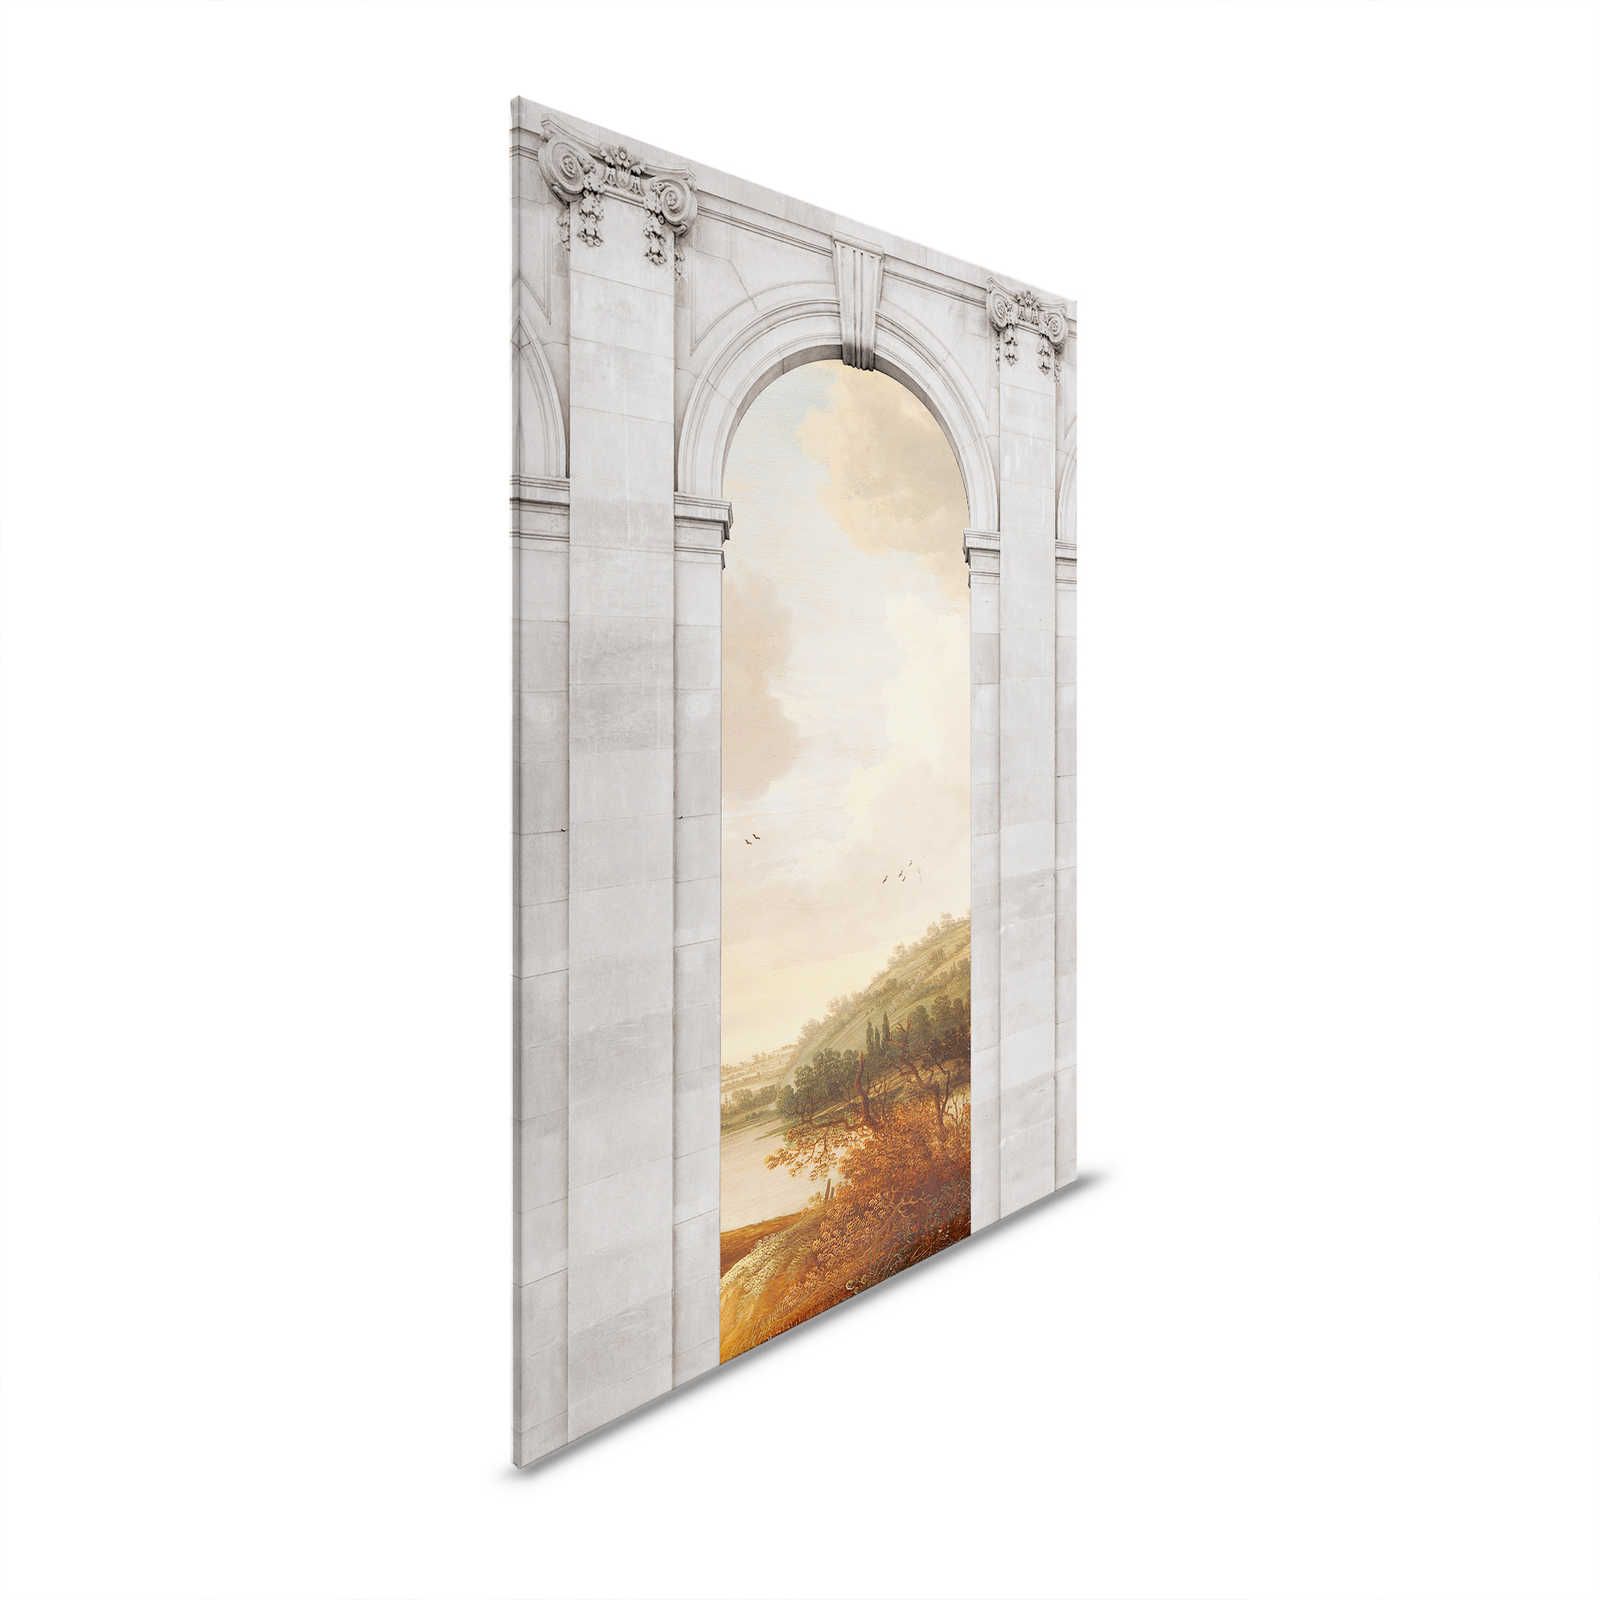         Castello 1 - Canvas painting Landscape & Arch Architecture - 0.90 m x 0.60 m
    